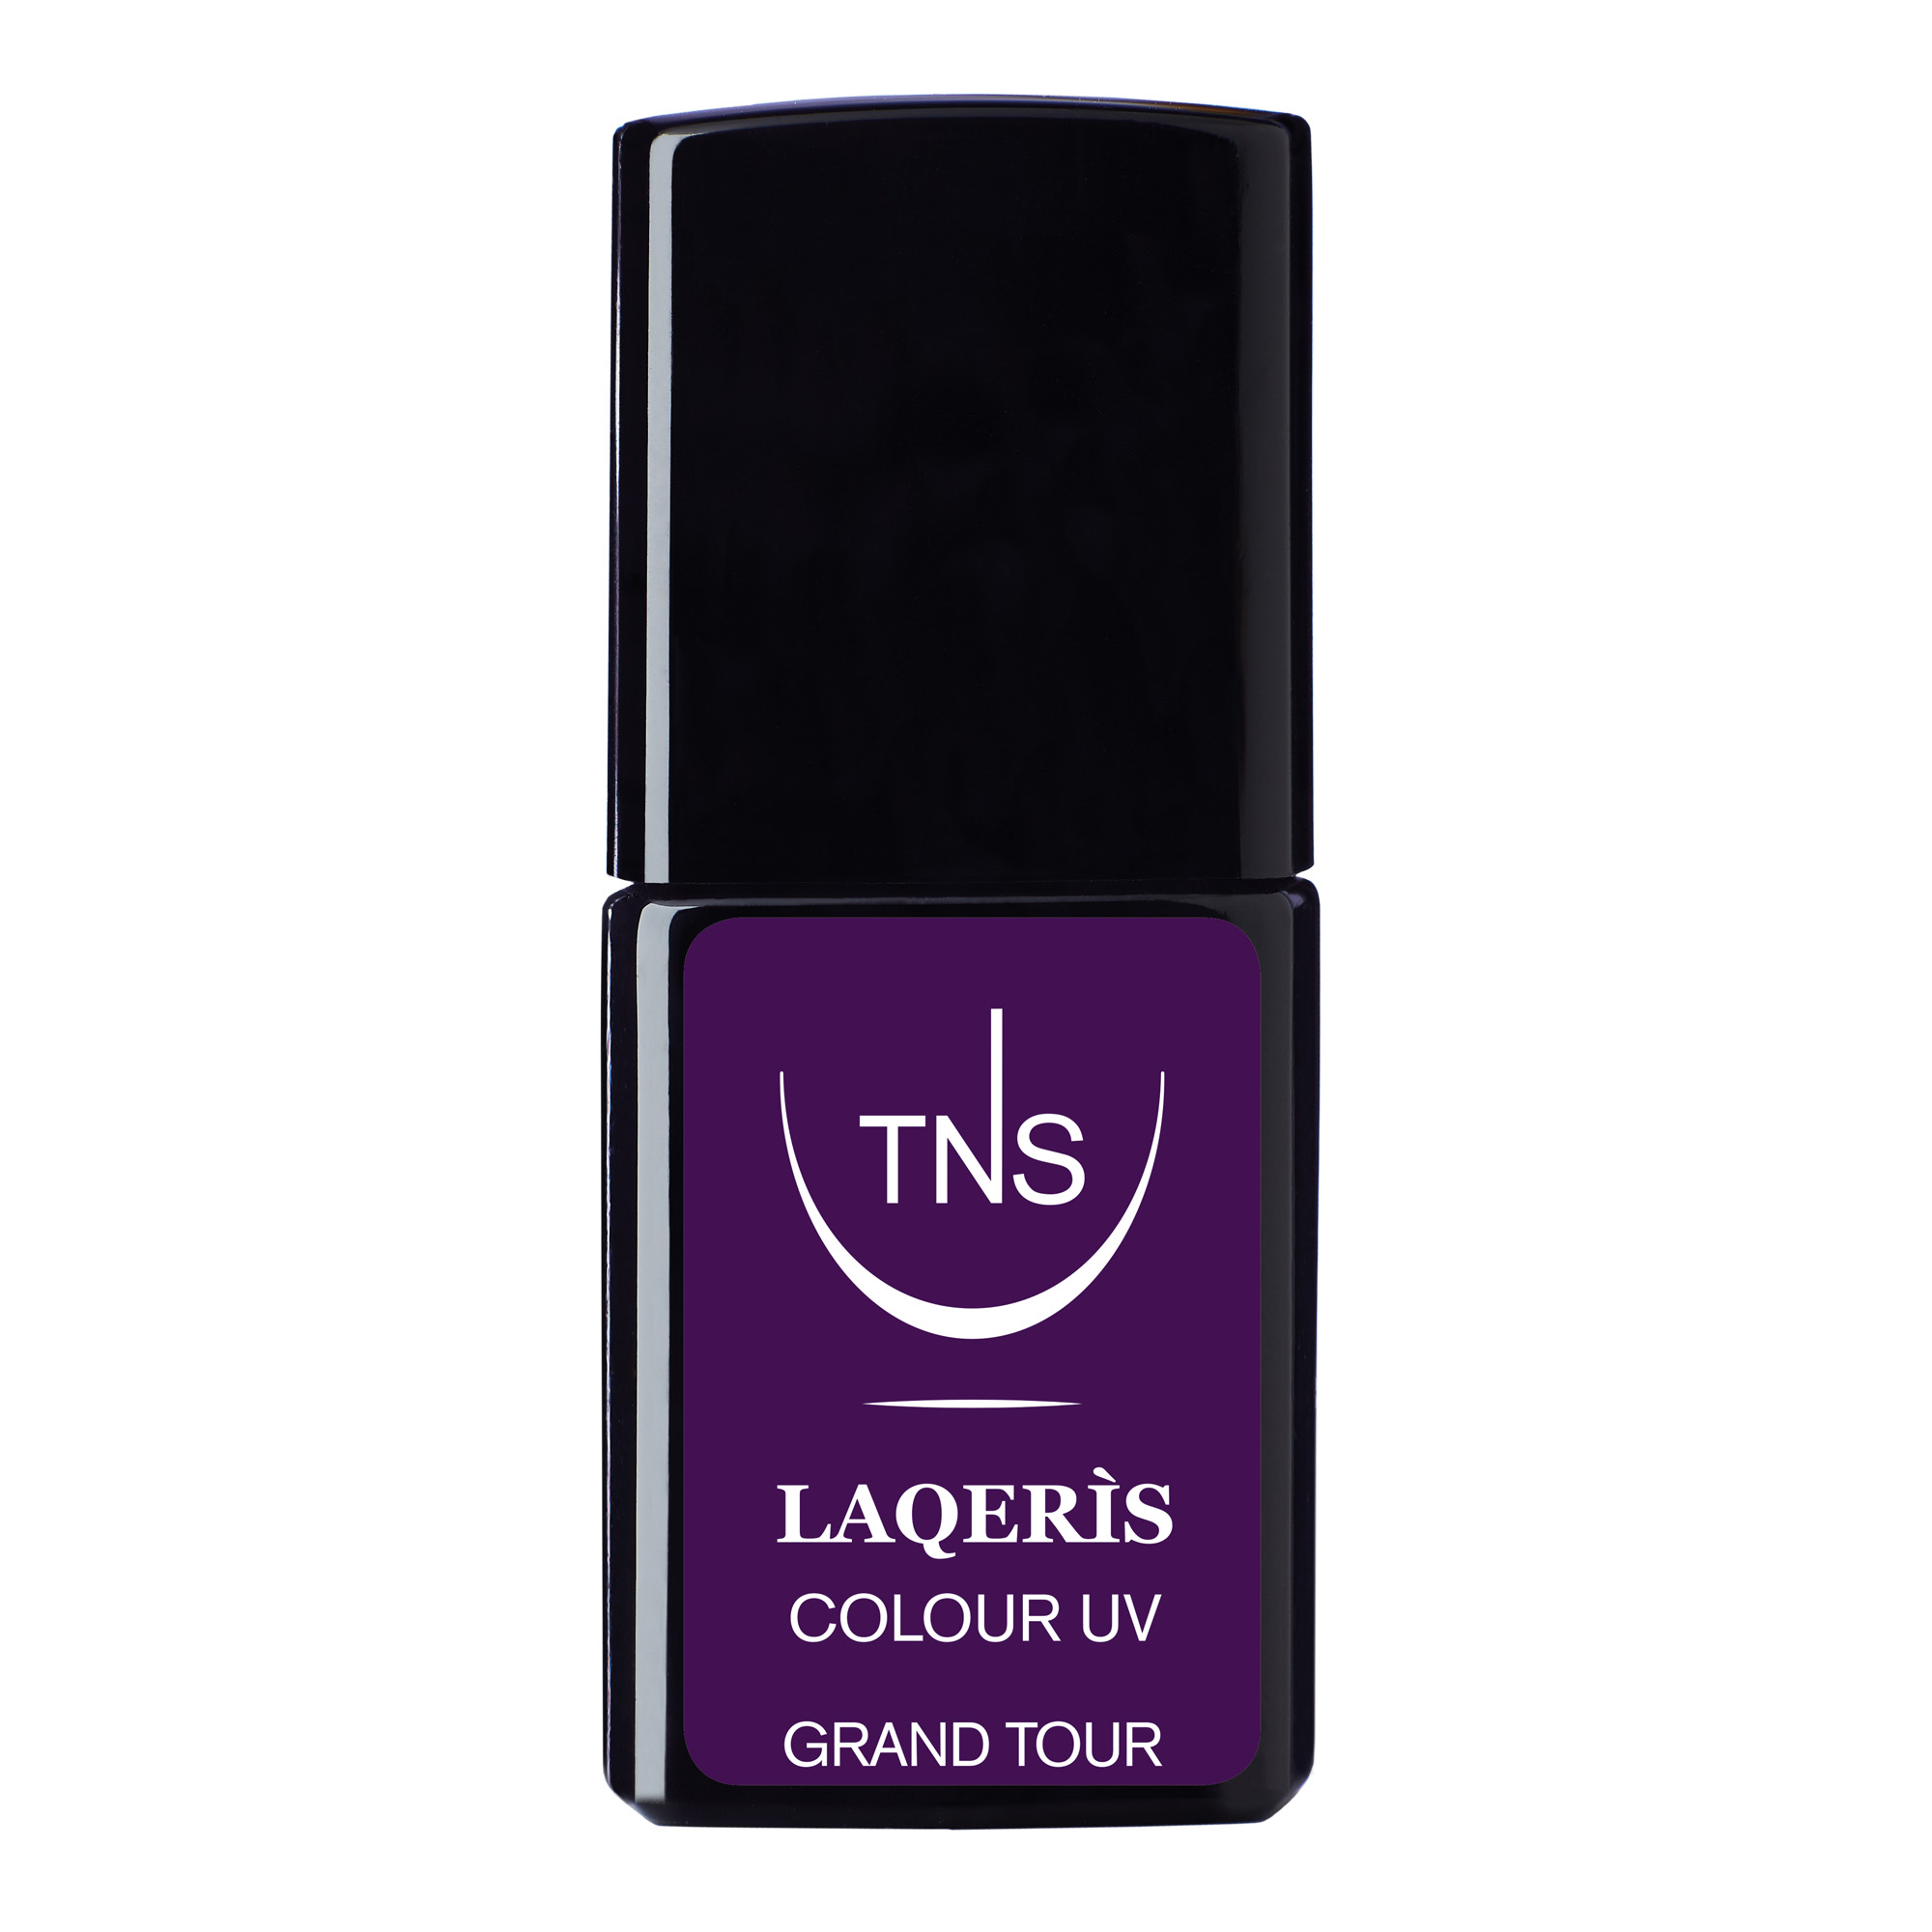 Semi-permanent nail polish dark purple Grand Tour 10 ml Laqerìs TNS